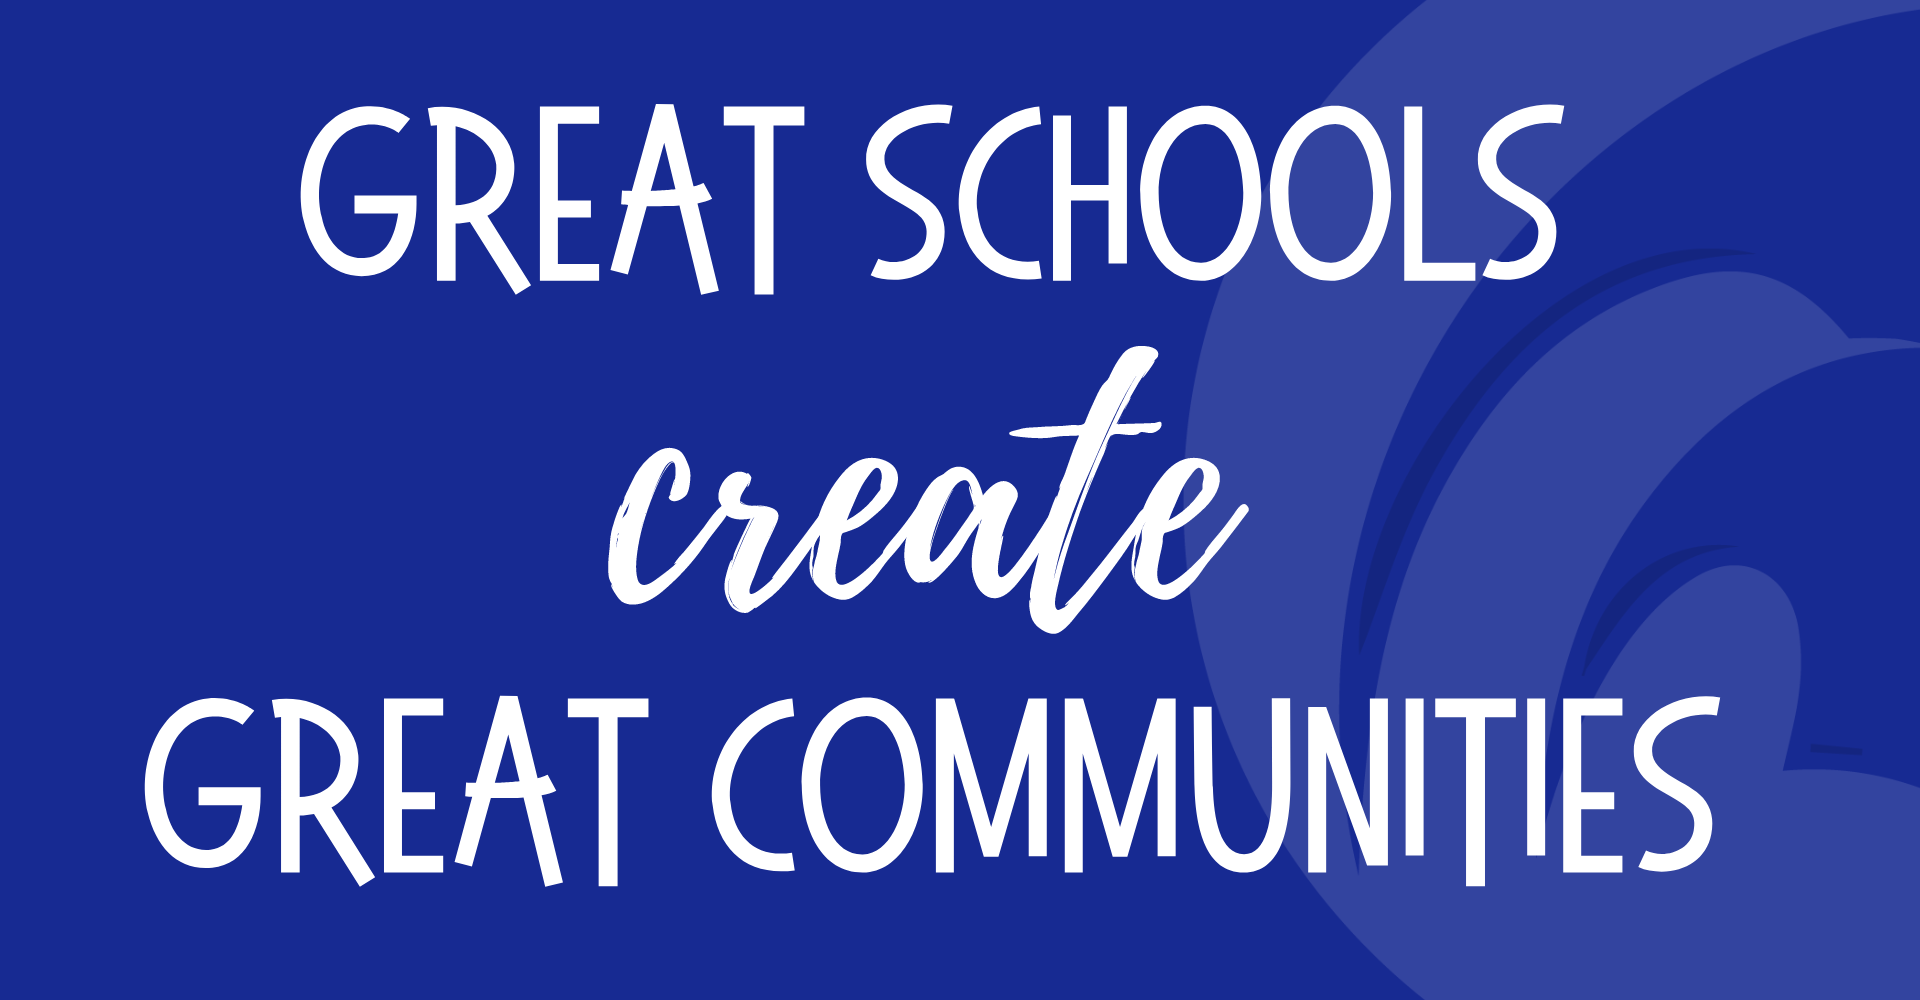 Great Schools Create Great Communities